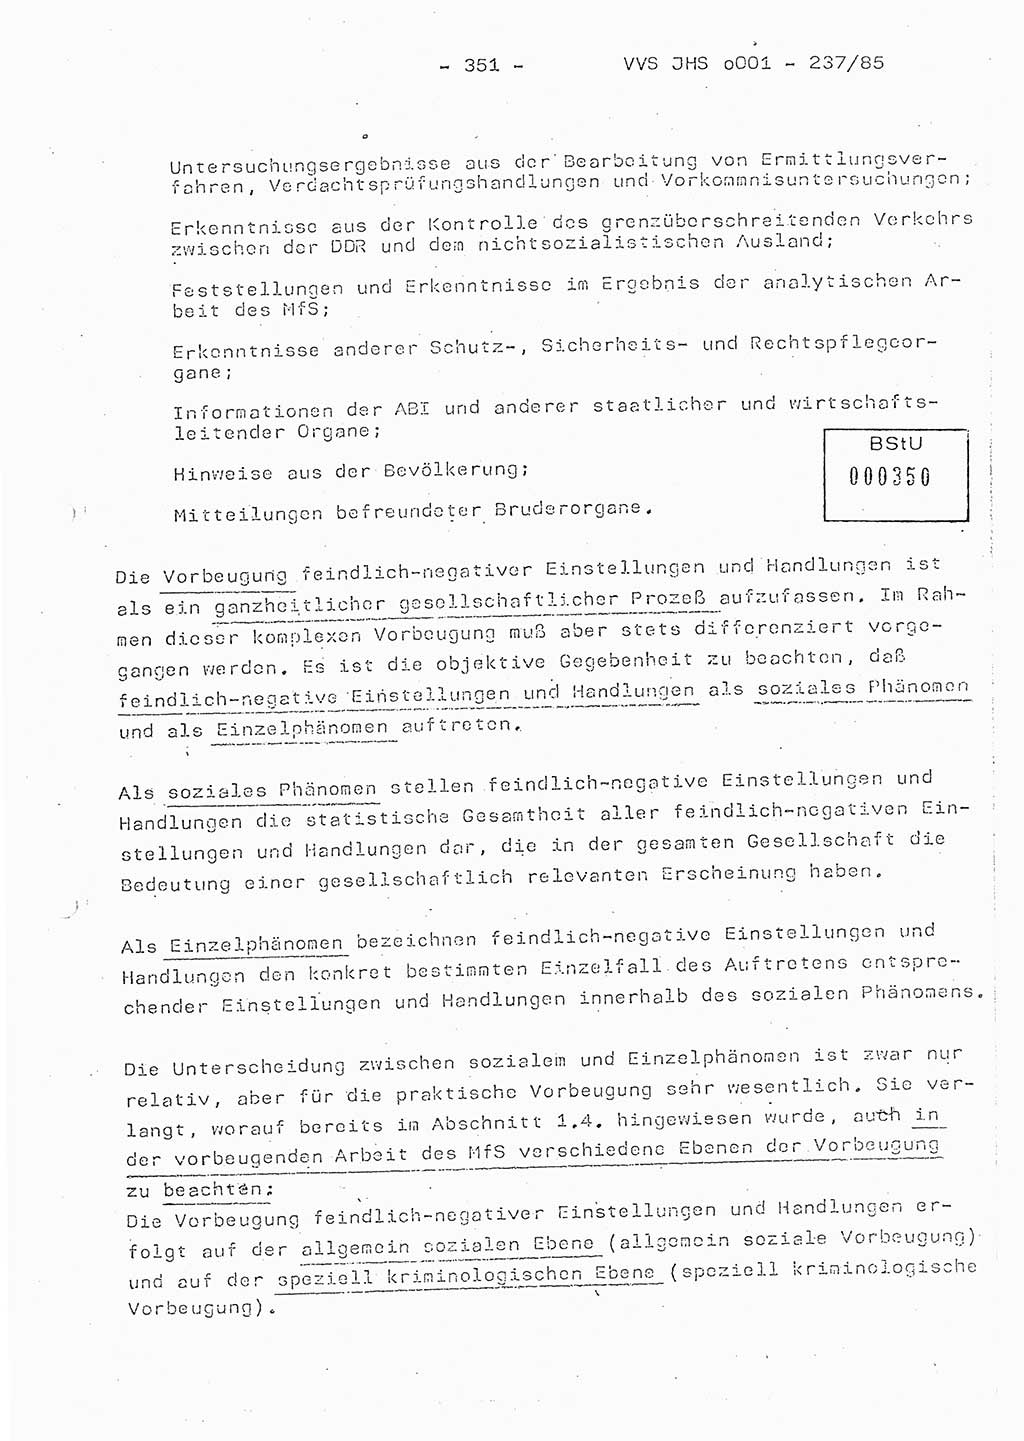 Dissertation Oberstleutnant Peter Jakulski (JHS), Oberstleutnat Christian Rudolph (HA Ⅸ), Major Horst Böttger (ZMD), Major Wolfgang Grüneberg (JHS), Major Albert Meutsch (JHS), Ministerium für Staatssicherheit (MfS) [Deutsche Demokratische Republik (DDR)], Juristische Hochschule (JHS), Vertrauliche Verschlußsache (VVS) o001-237/85, Potsdam 1985, Seite 351 (Diss. MfS DDR JHS VVS o001-237/85 1985, S. 351)